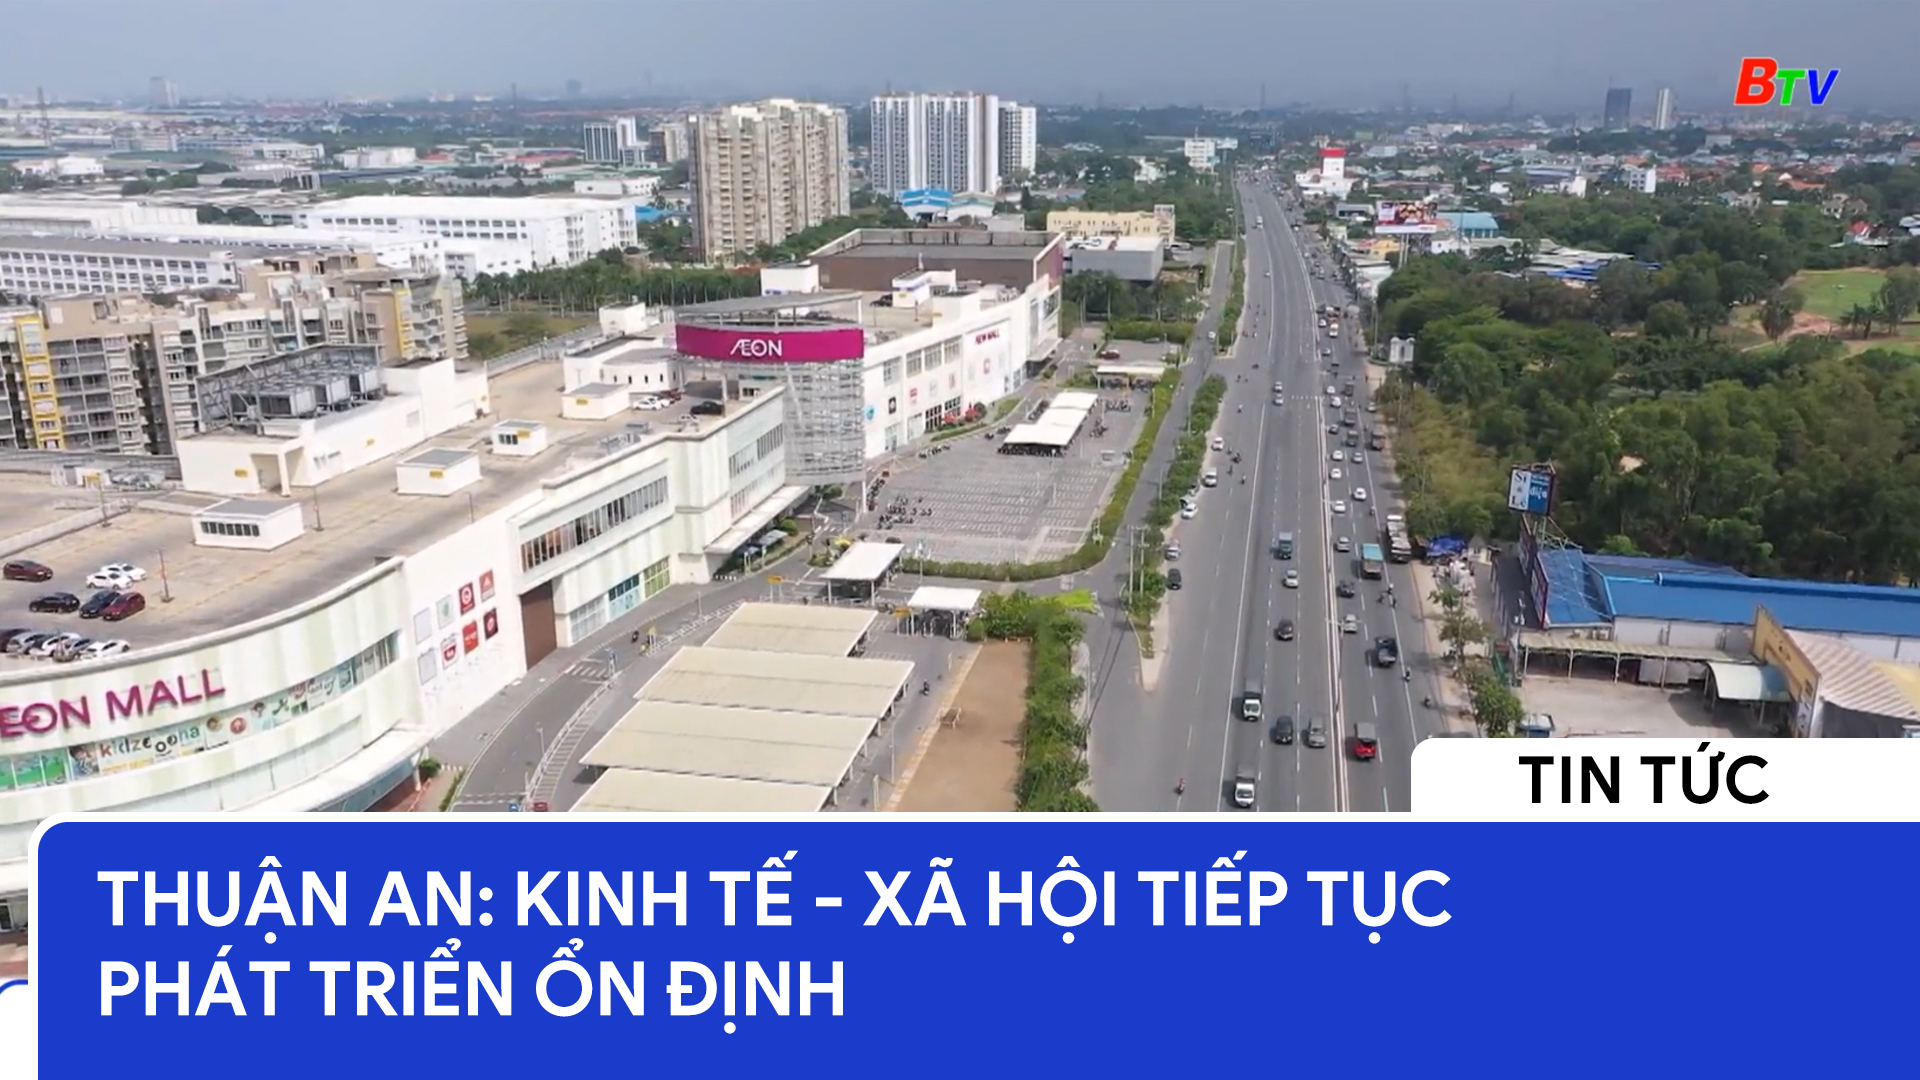 Thuận An: Kinh tế - Xã hội tiếp tục phát triển ổn định